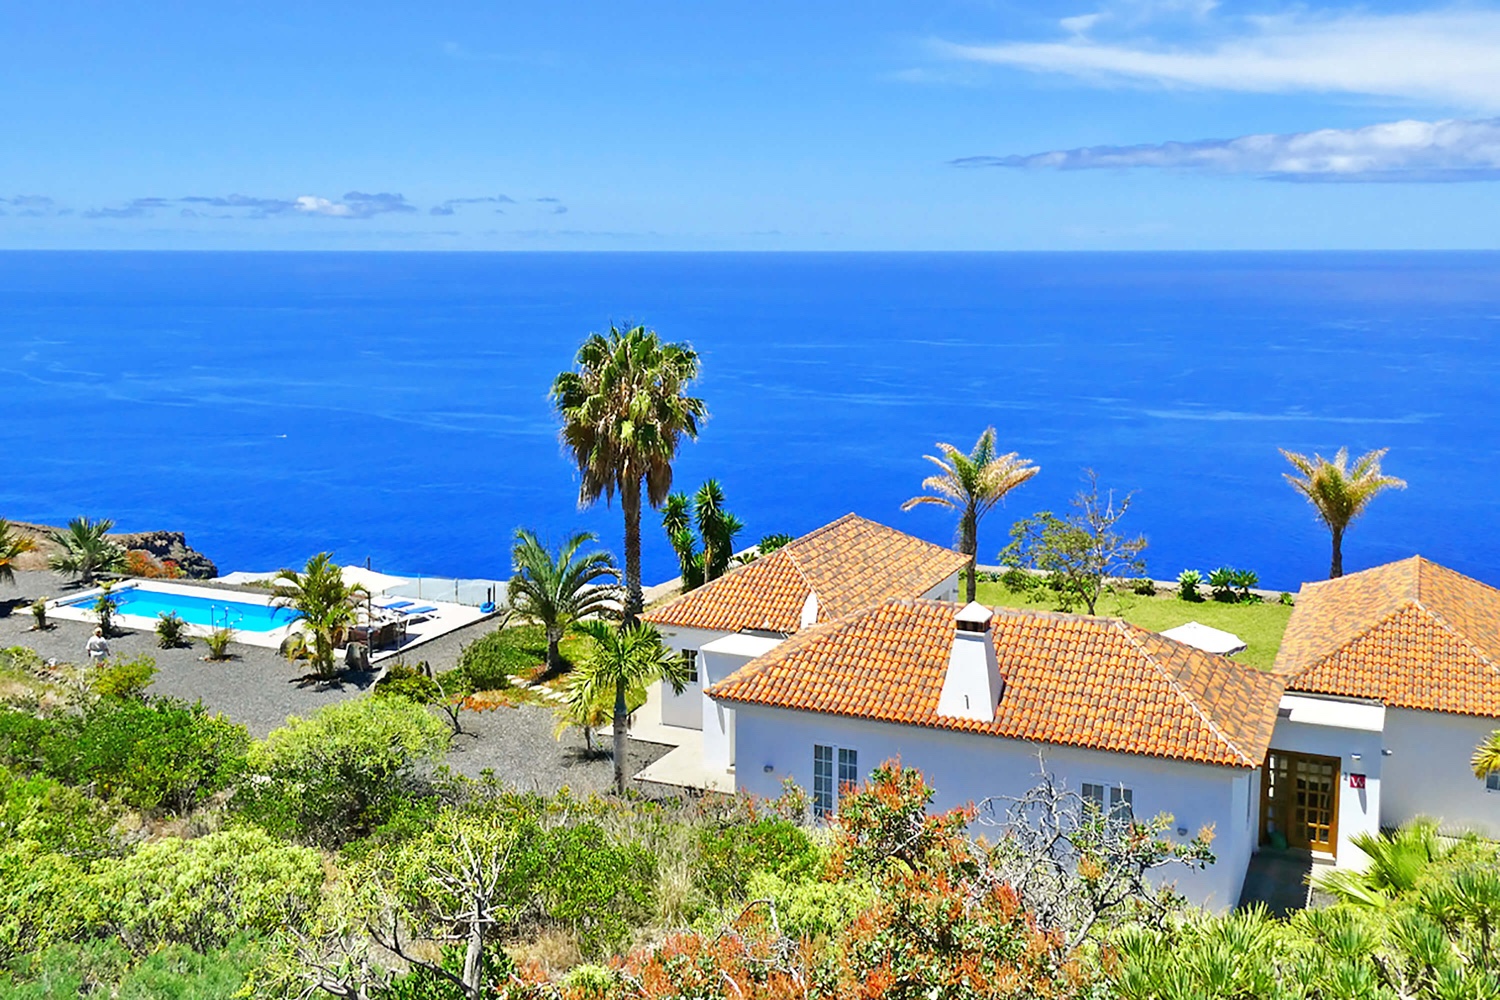 Sehr schöne moderne Villa mit Privatpool und herrlichem Panoramablick auf den Atlantik. Das sehr gut ausgestattete Ferienhaus ist ideal für einen La Palma Urlaub mit allem Komfort.